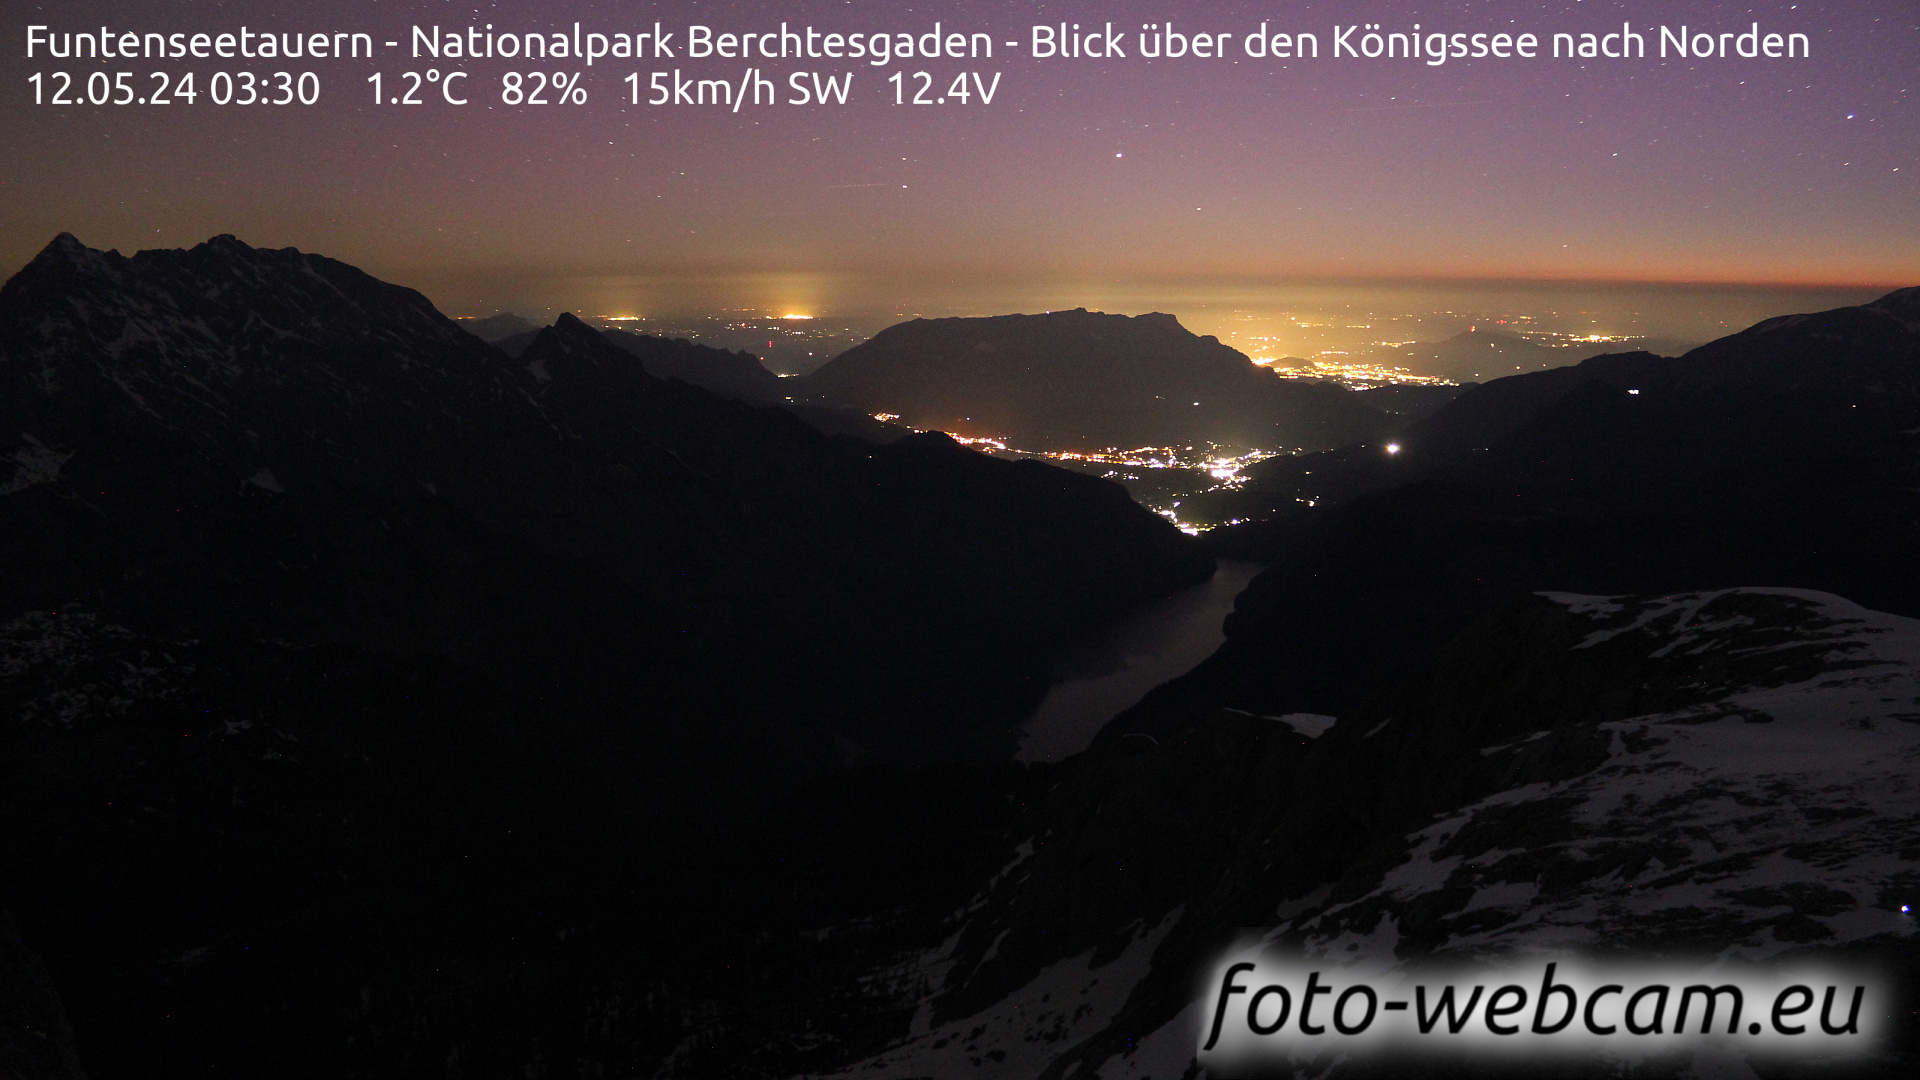 Berchtesgaden Je. 03:48